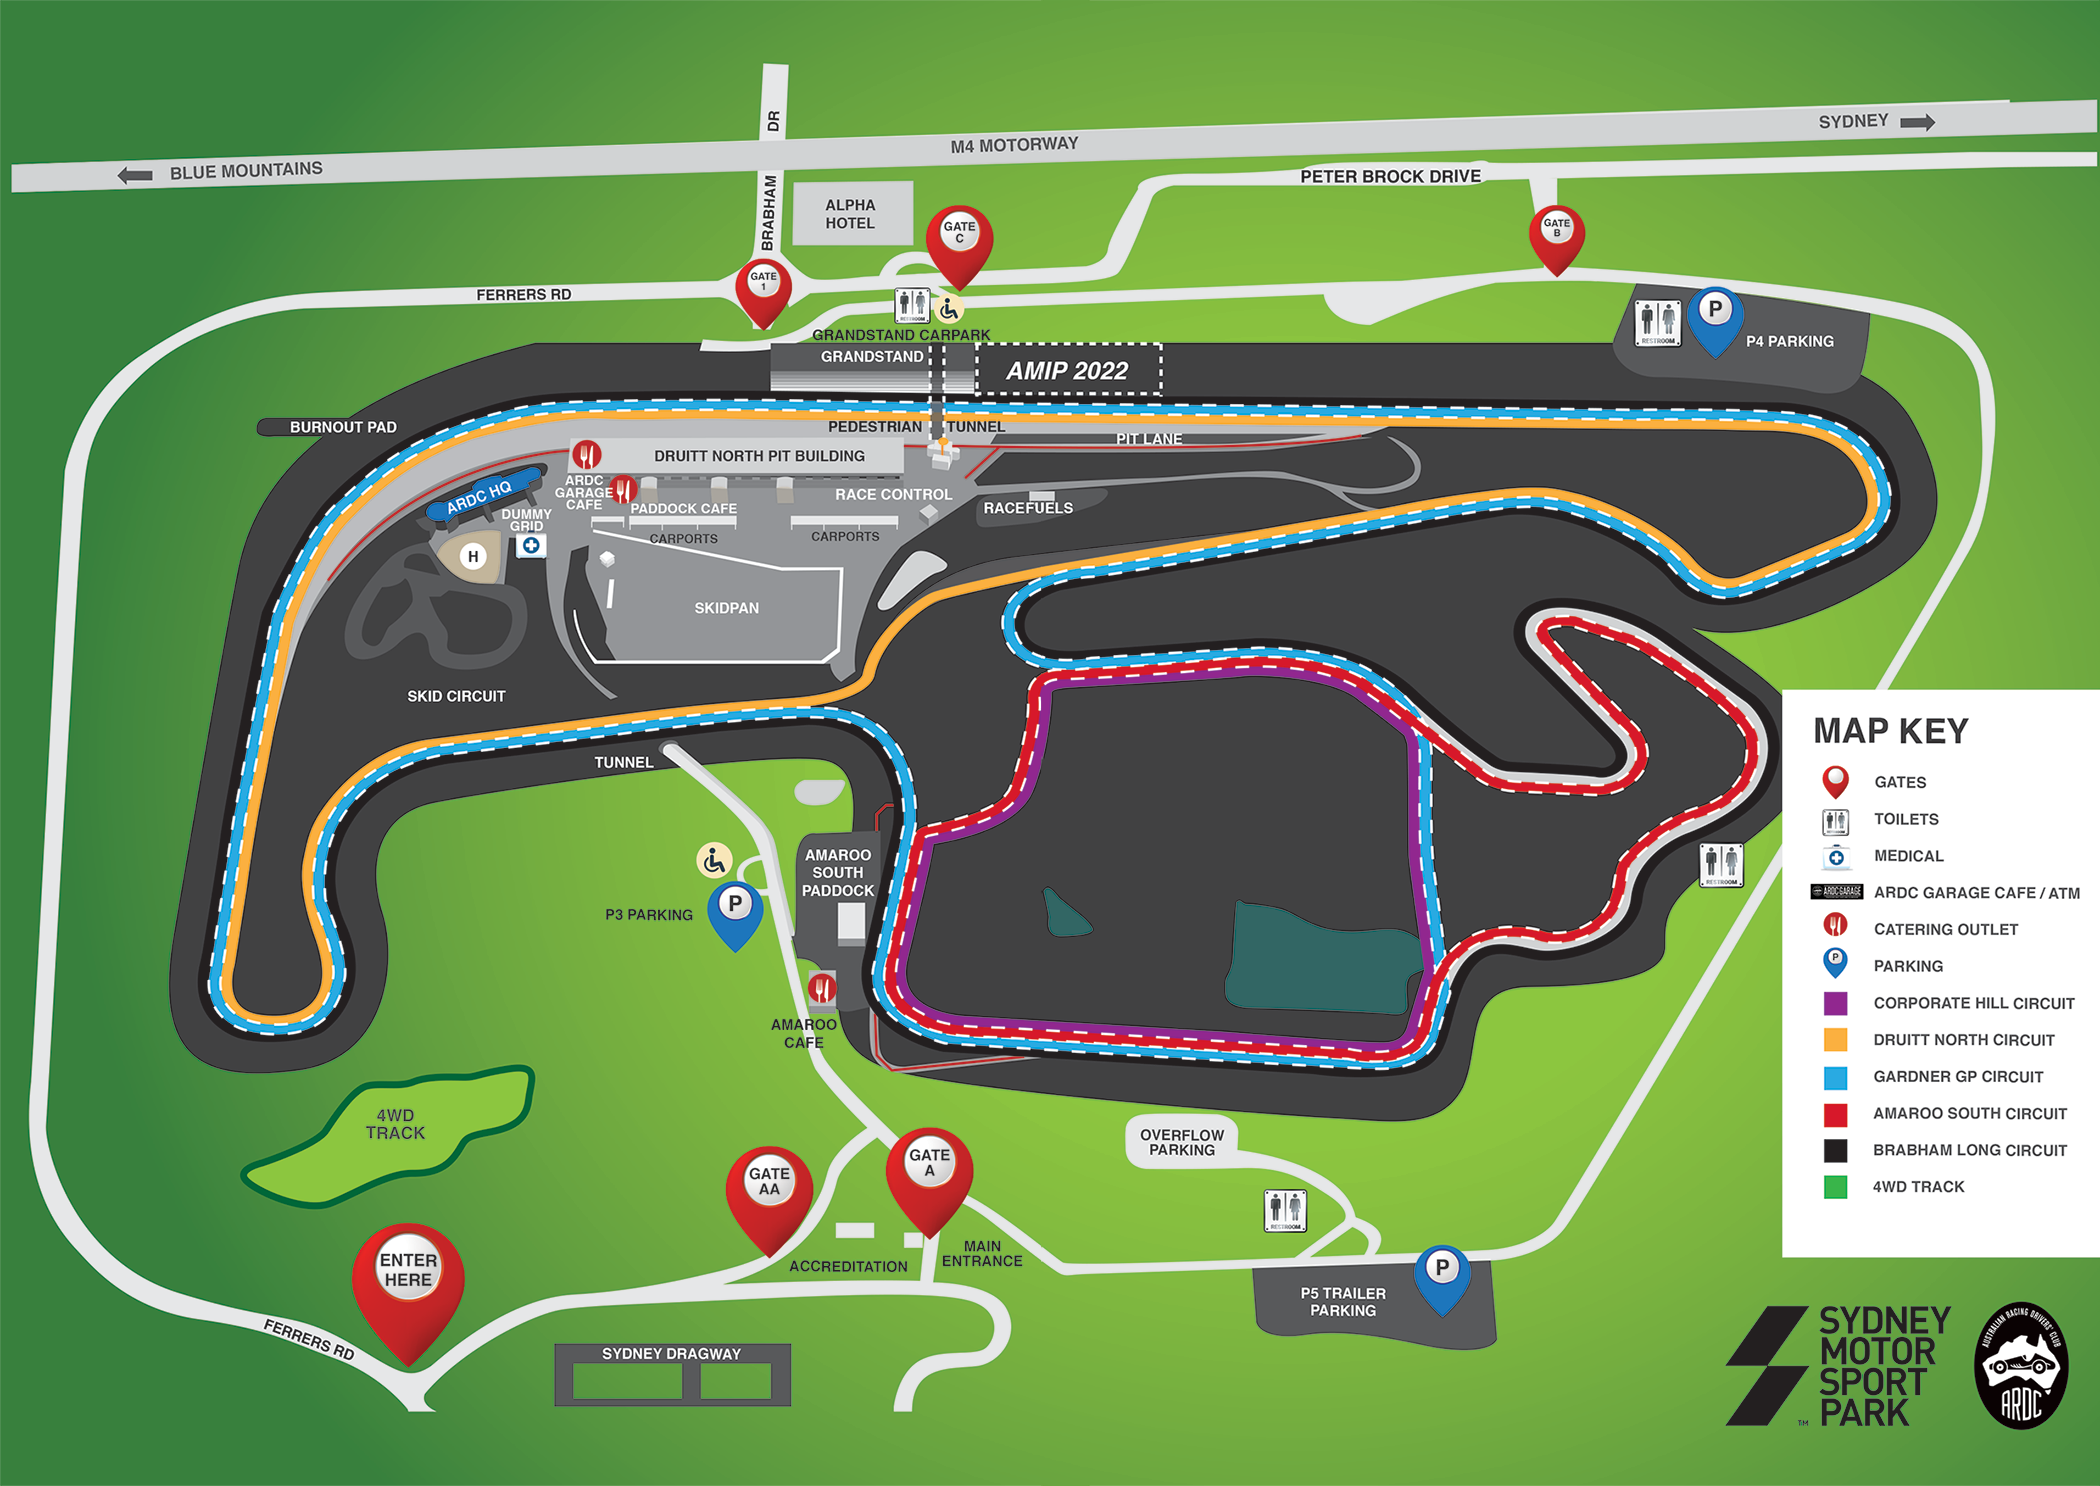 SMSP Maps Sydney Motorsport Park Events and Online Shop